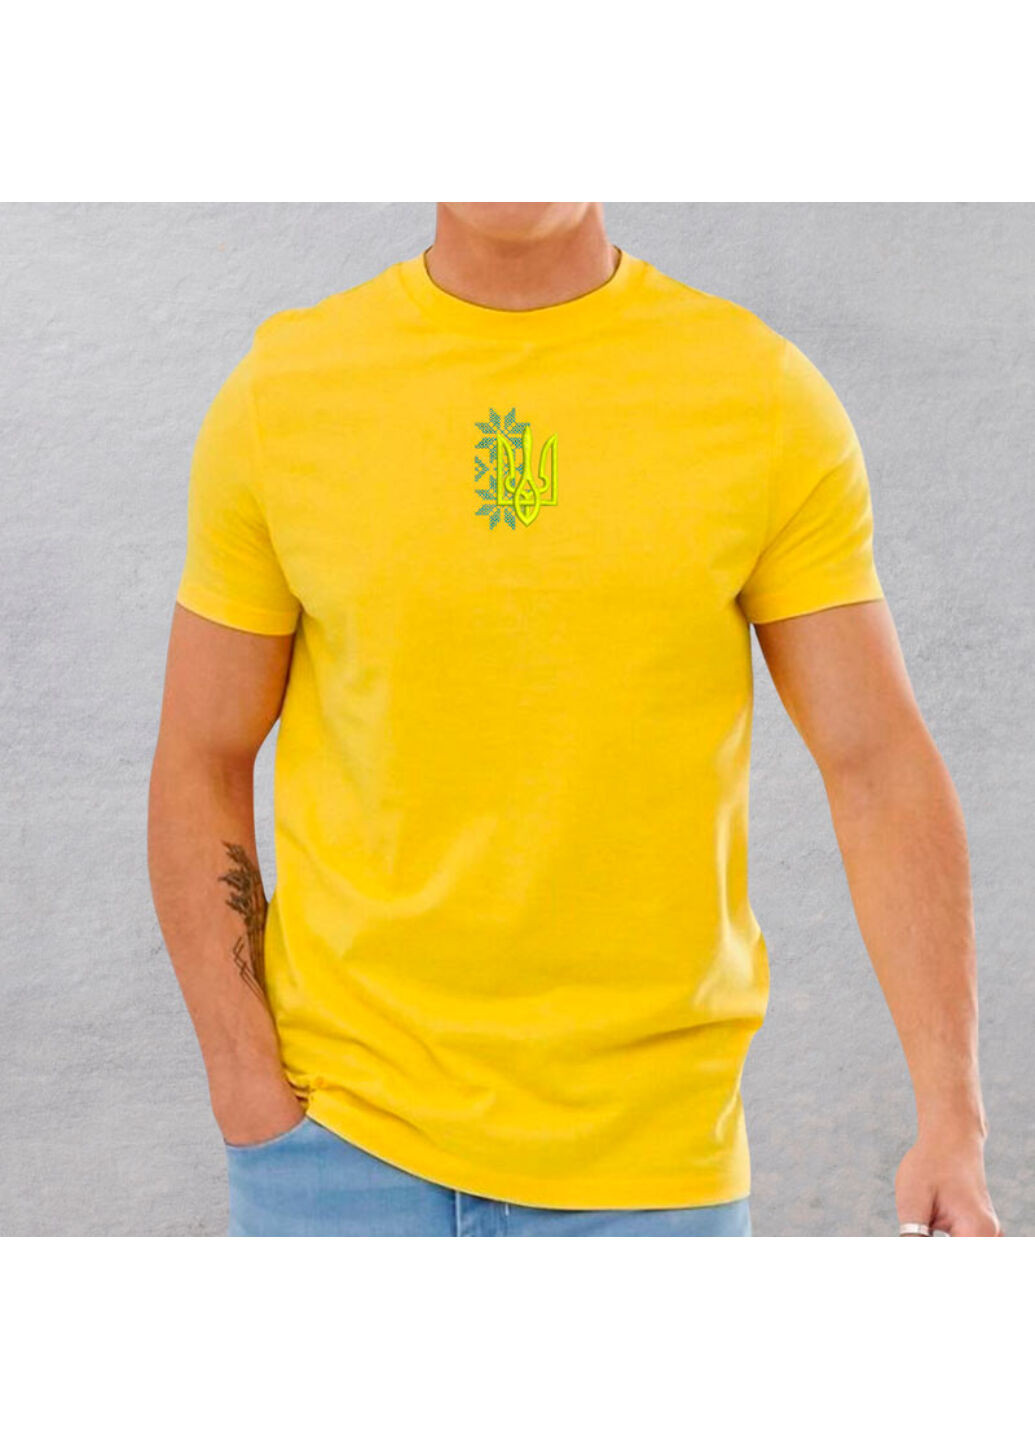 Жовта футболка з вишивкою тризуба 01-3 чоловіча жовтий m No Brand